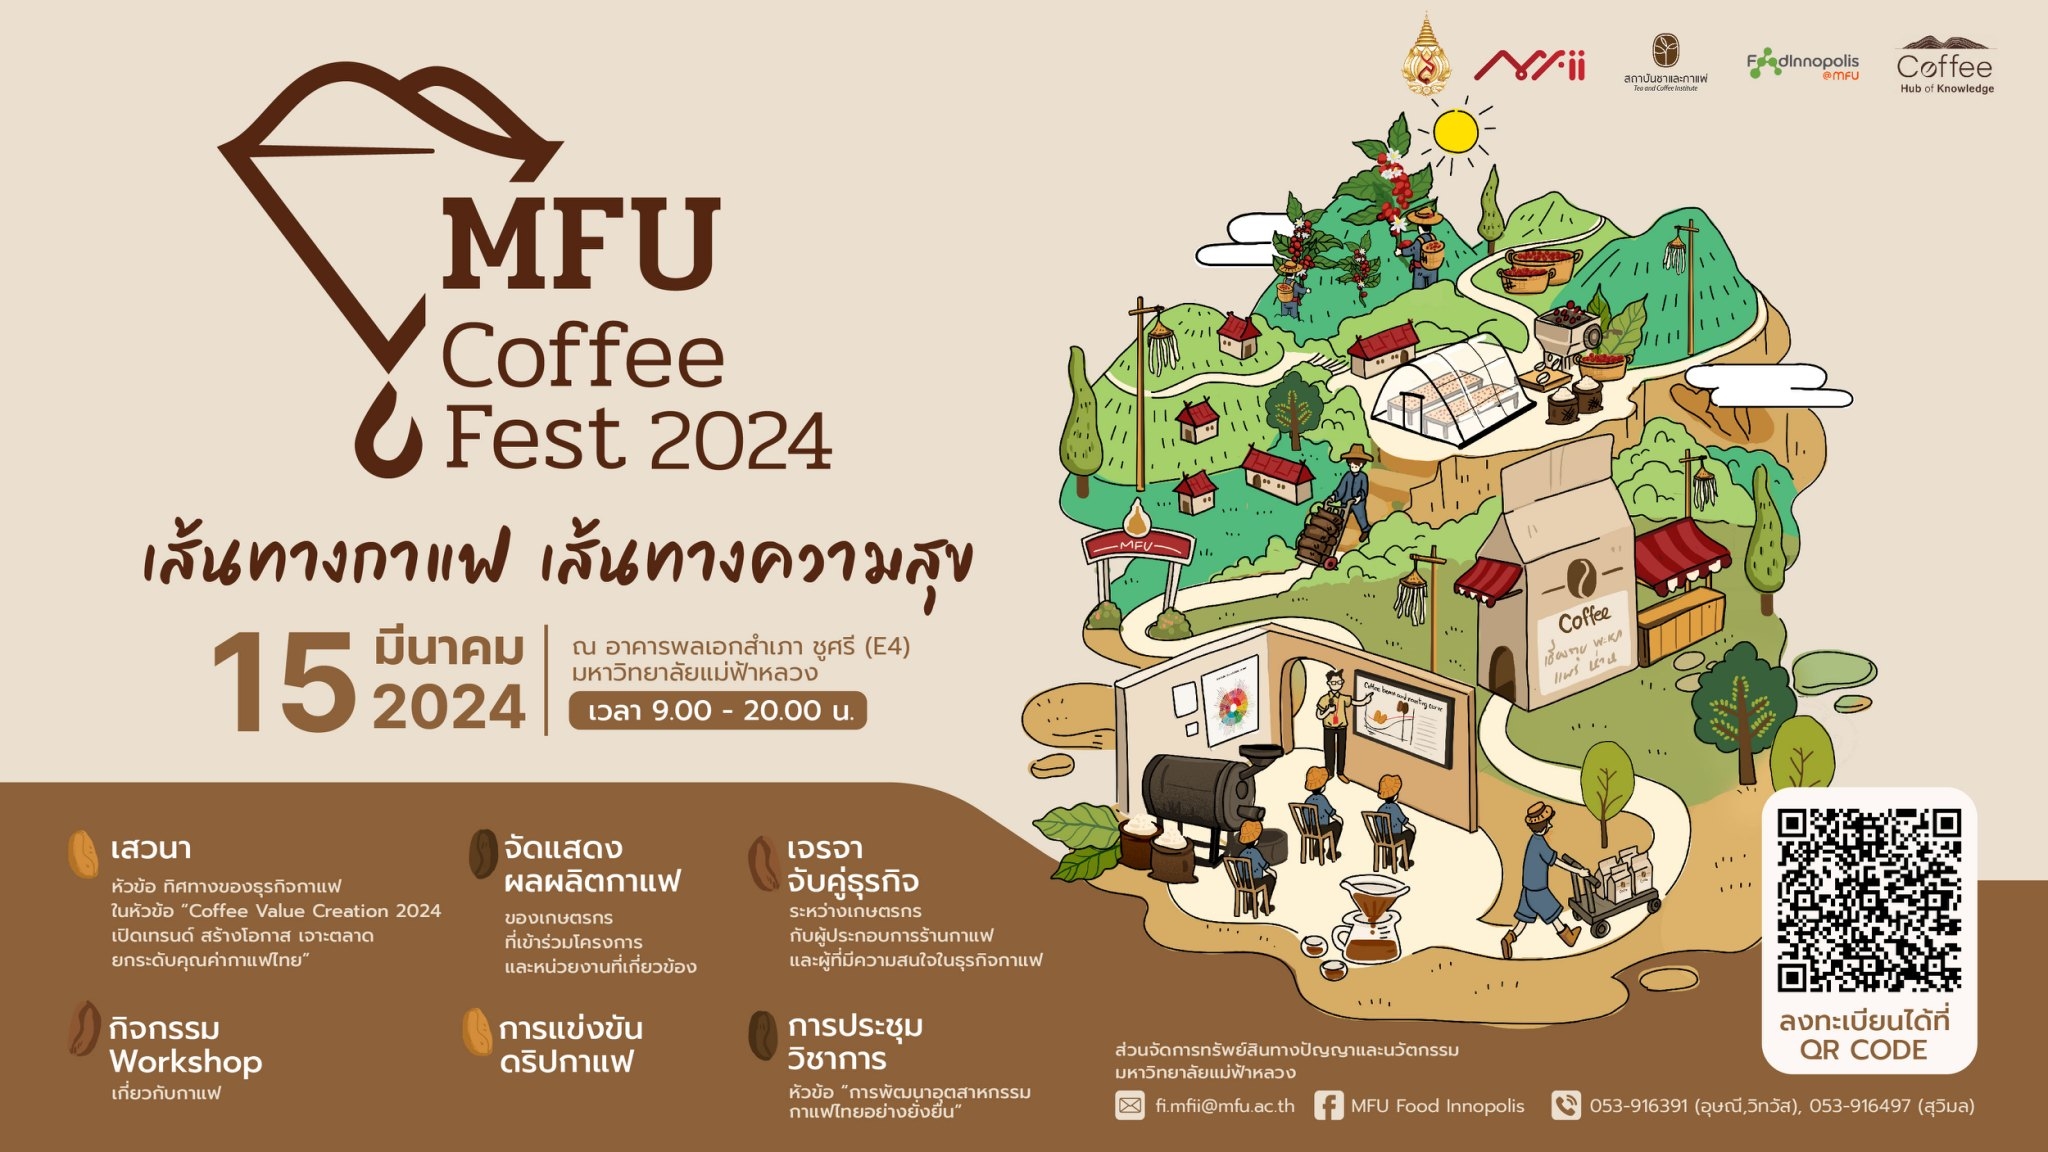 มฟล. เตรียมจัดงาน MFU Coffee Fest 2024 ภายใต้แนวคิด “เส้นทางกาแฟ เส้นทางความสุข” 15 มี.ค. 67 ที่สุดของนิทรรศการกาแฟครั้งยิ่งใหญ่แห่งปี สายรักกาแฟต้องห้ามพลาด 